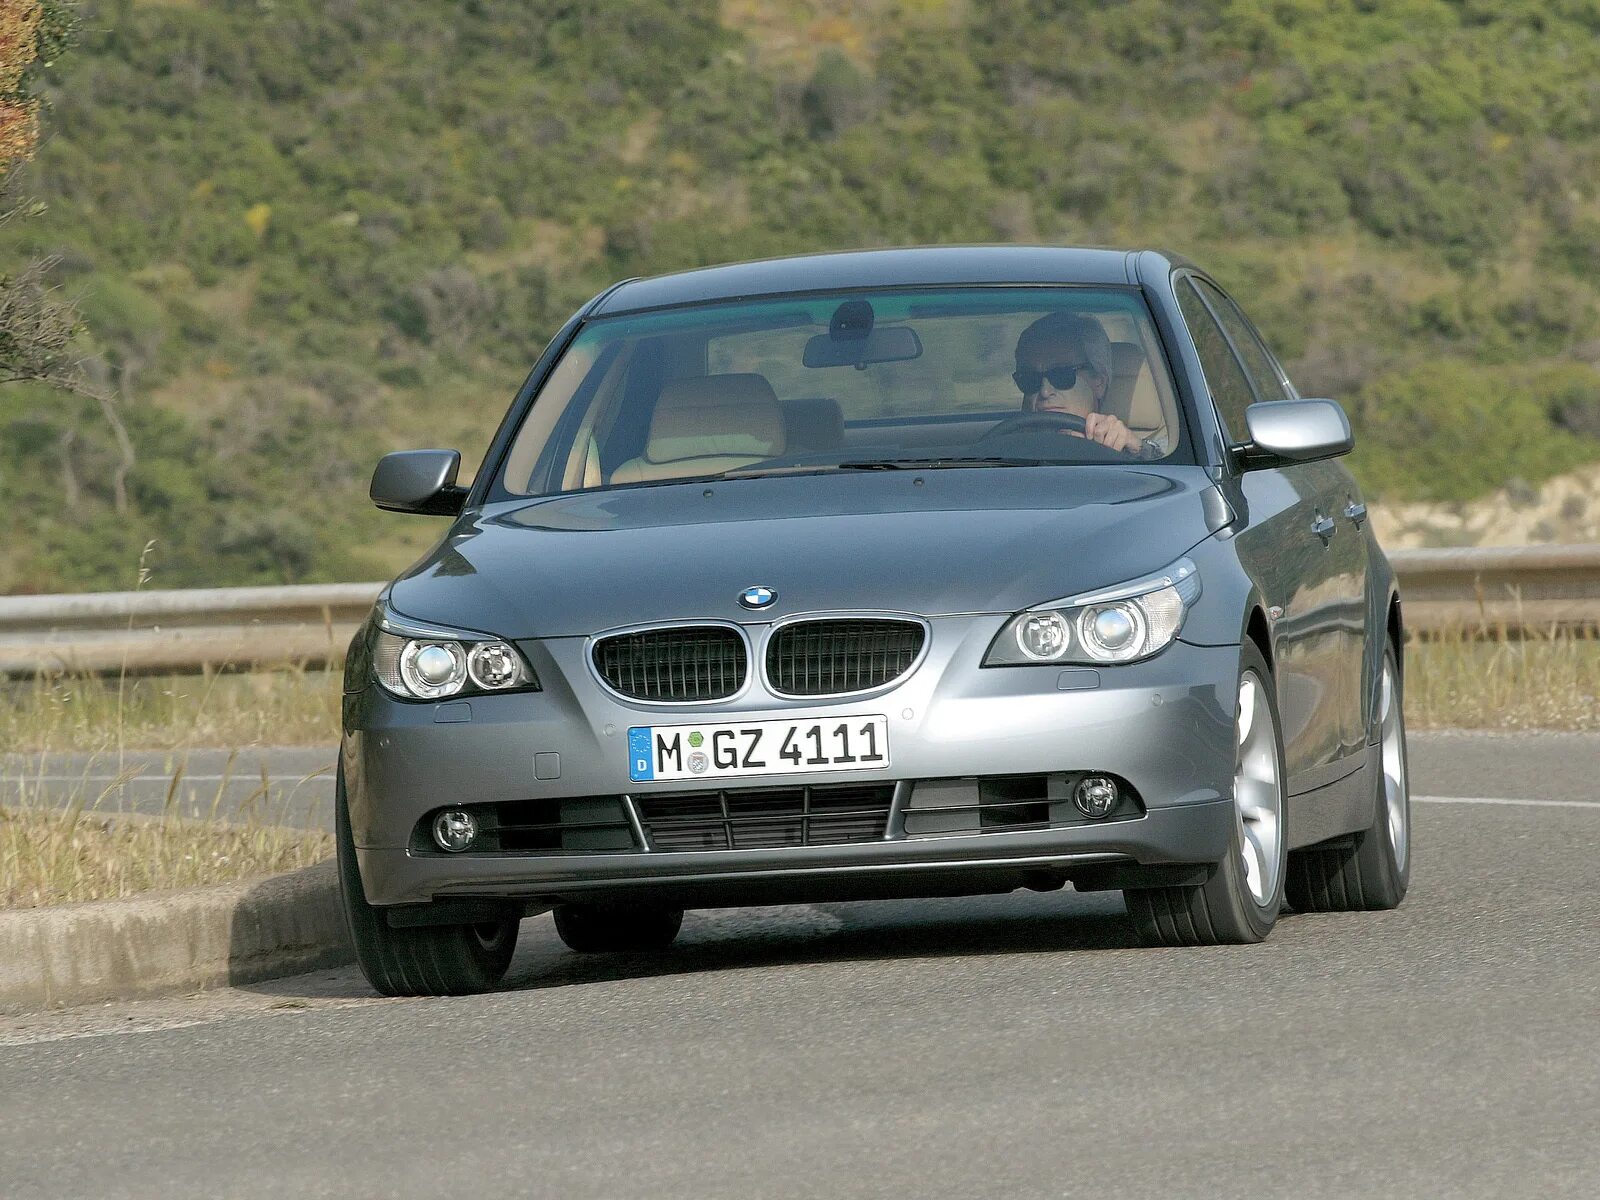 BMW 5 e60 2004. BMW 5 e60 2003. BMW 5 e60 530d. BMW 5 Series e60 2003. Bmw 5 series e60